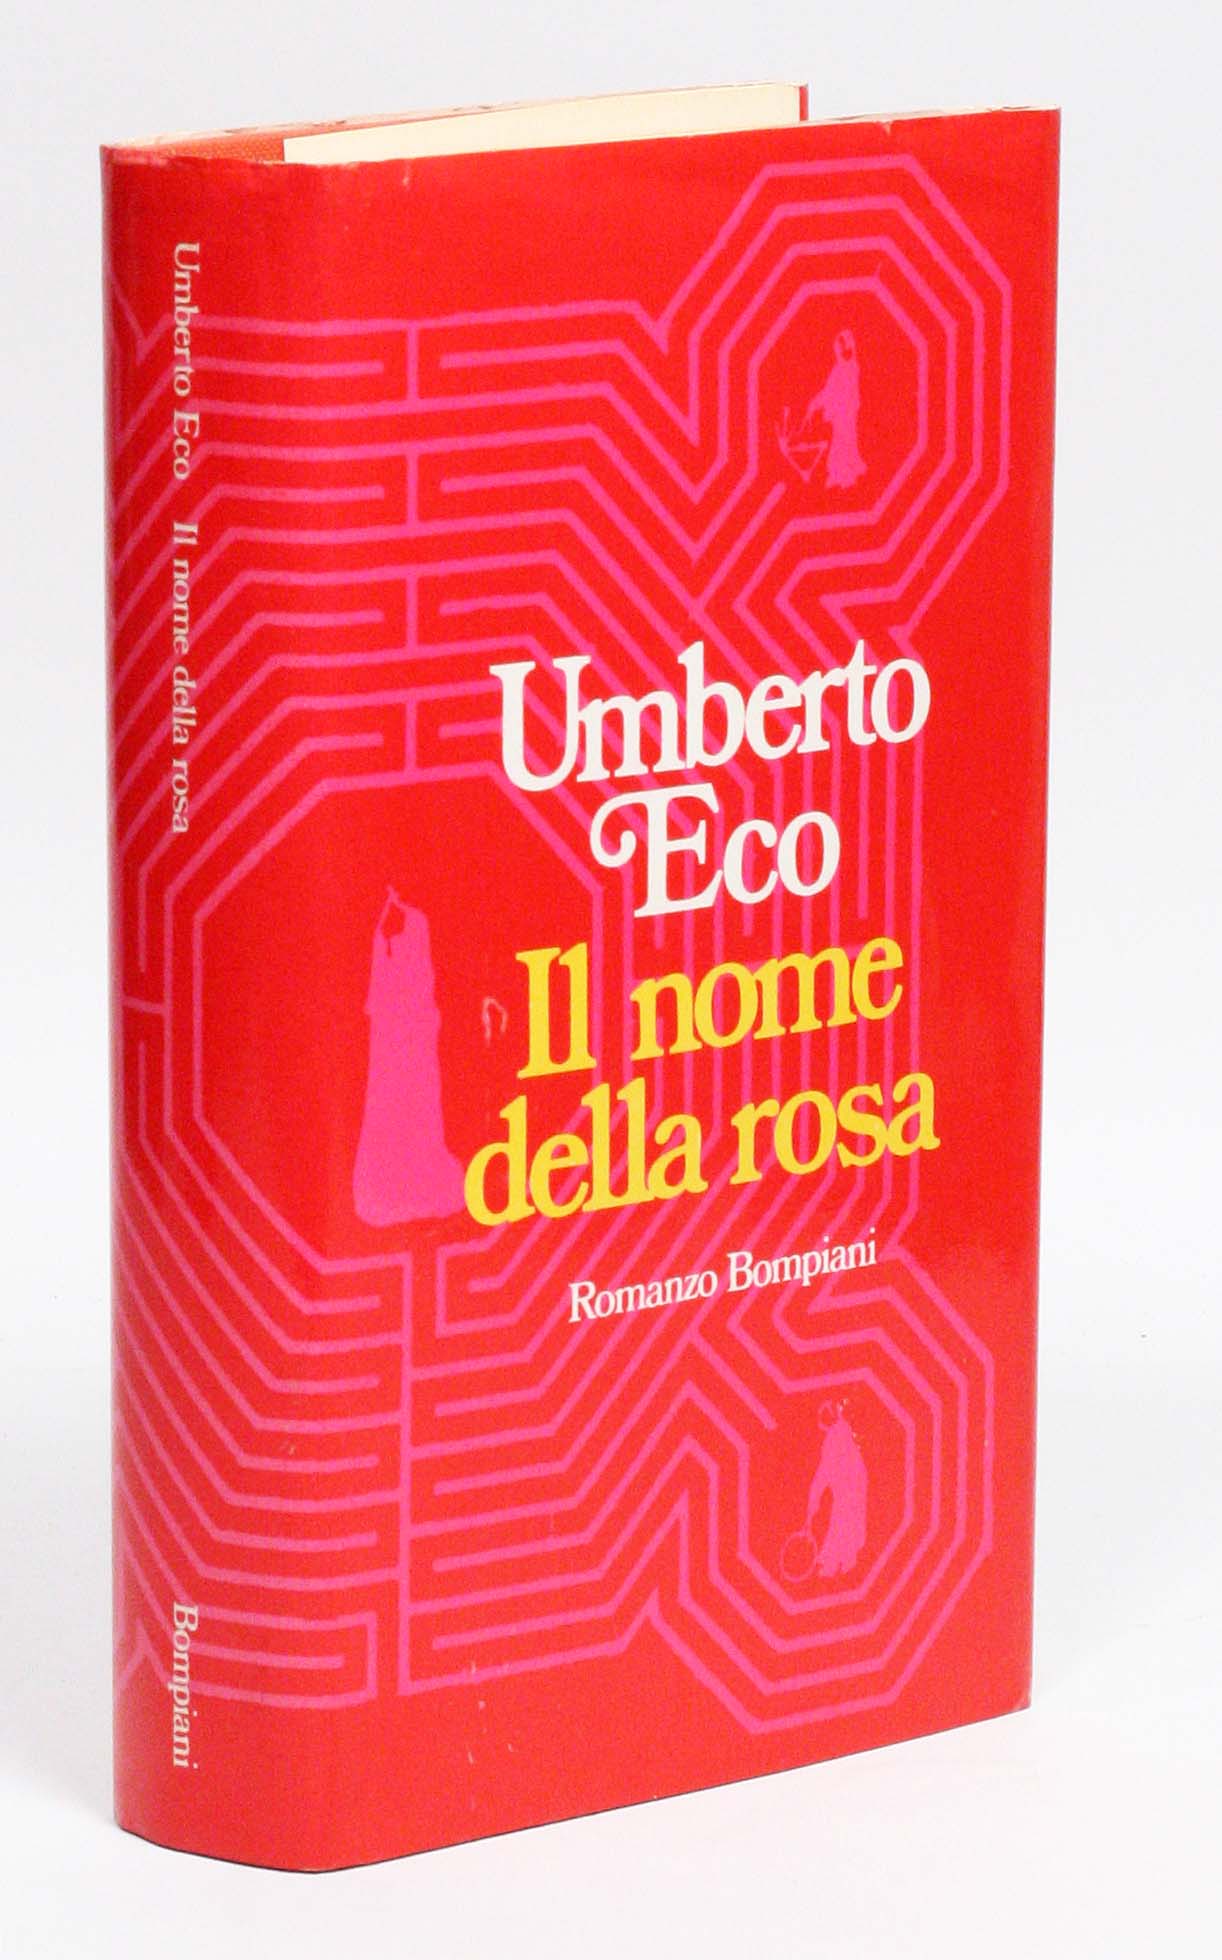 Il nome della rosa [The Name of the Rose] - ECO, UMBERTO